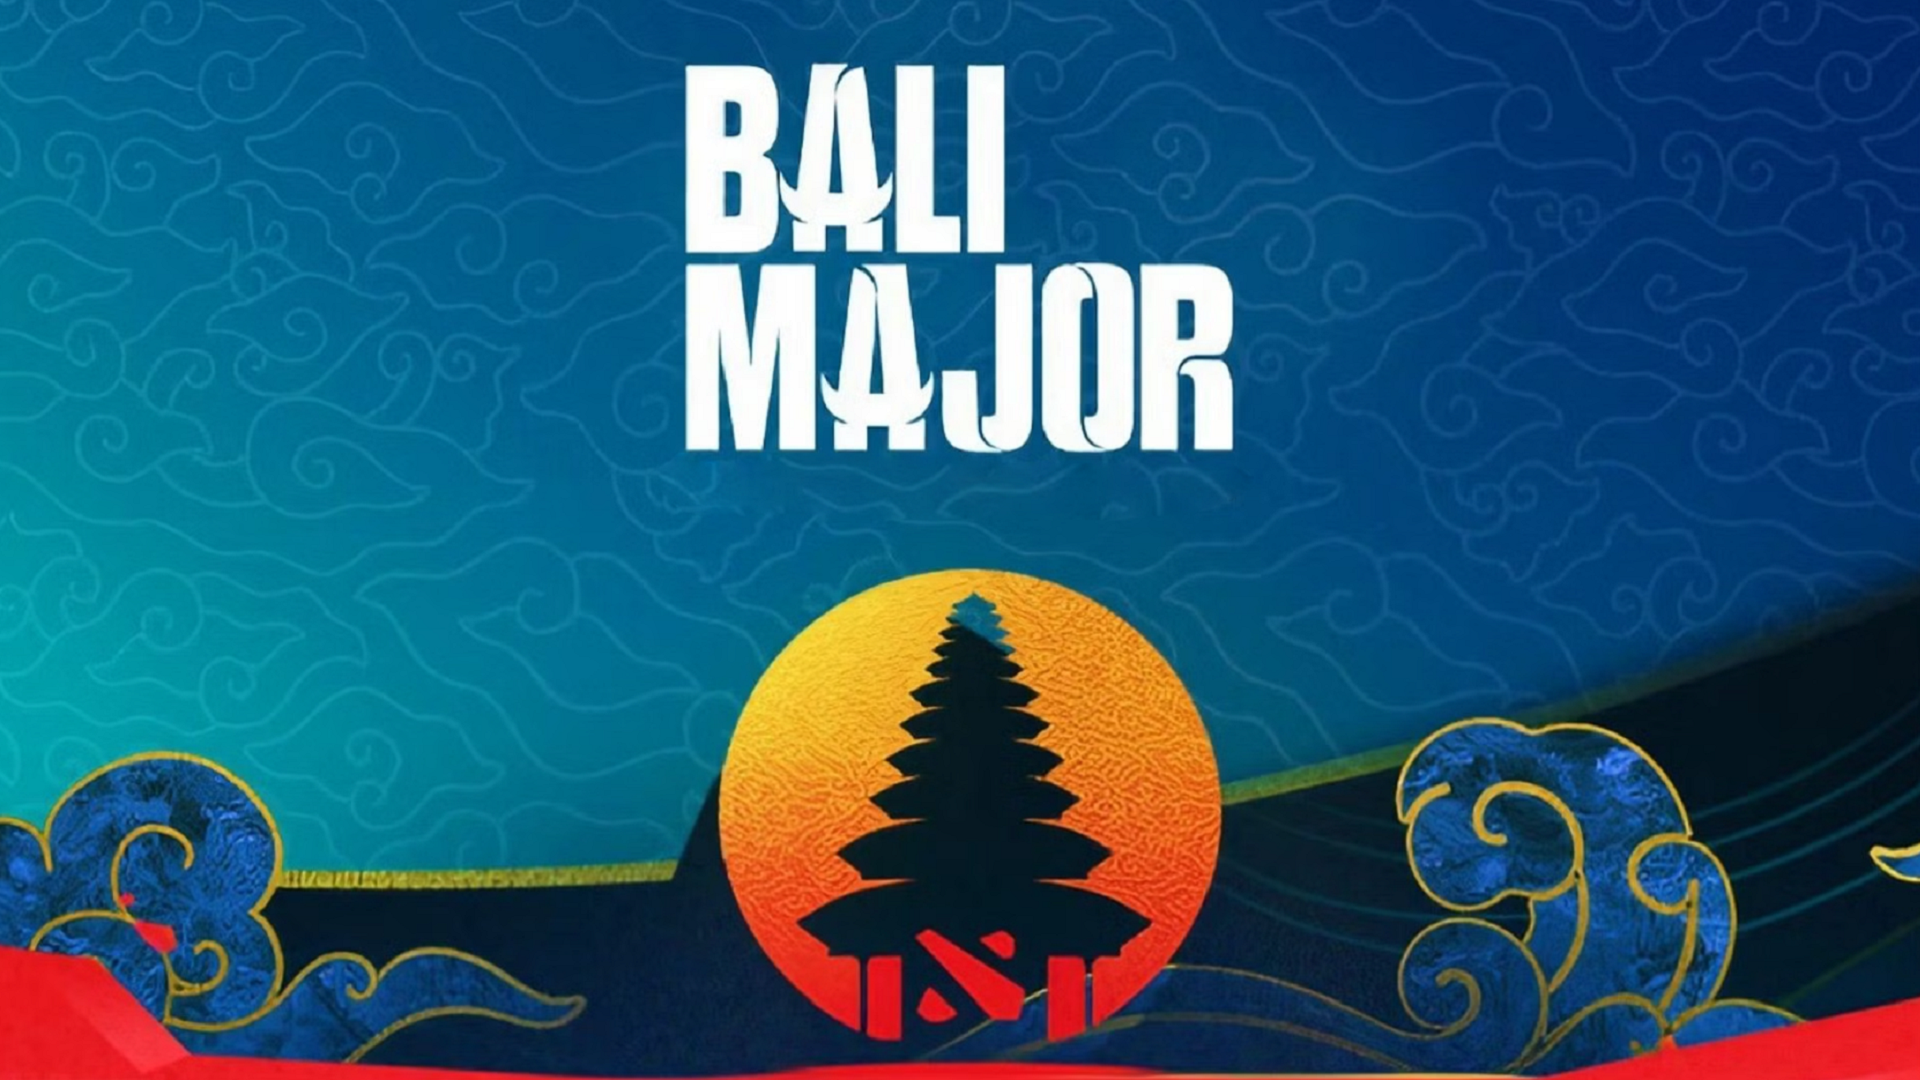 Определились все участники The Bali Major 2023